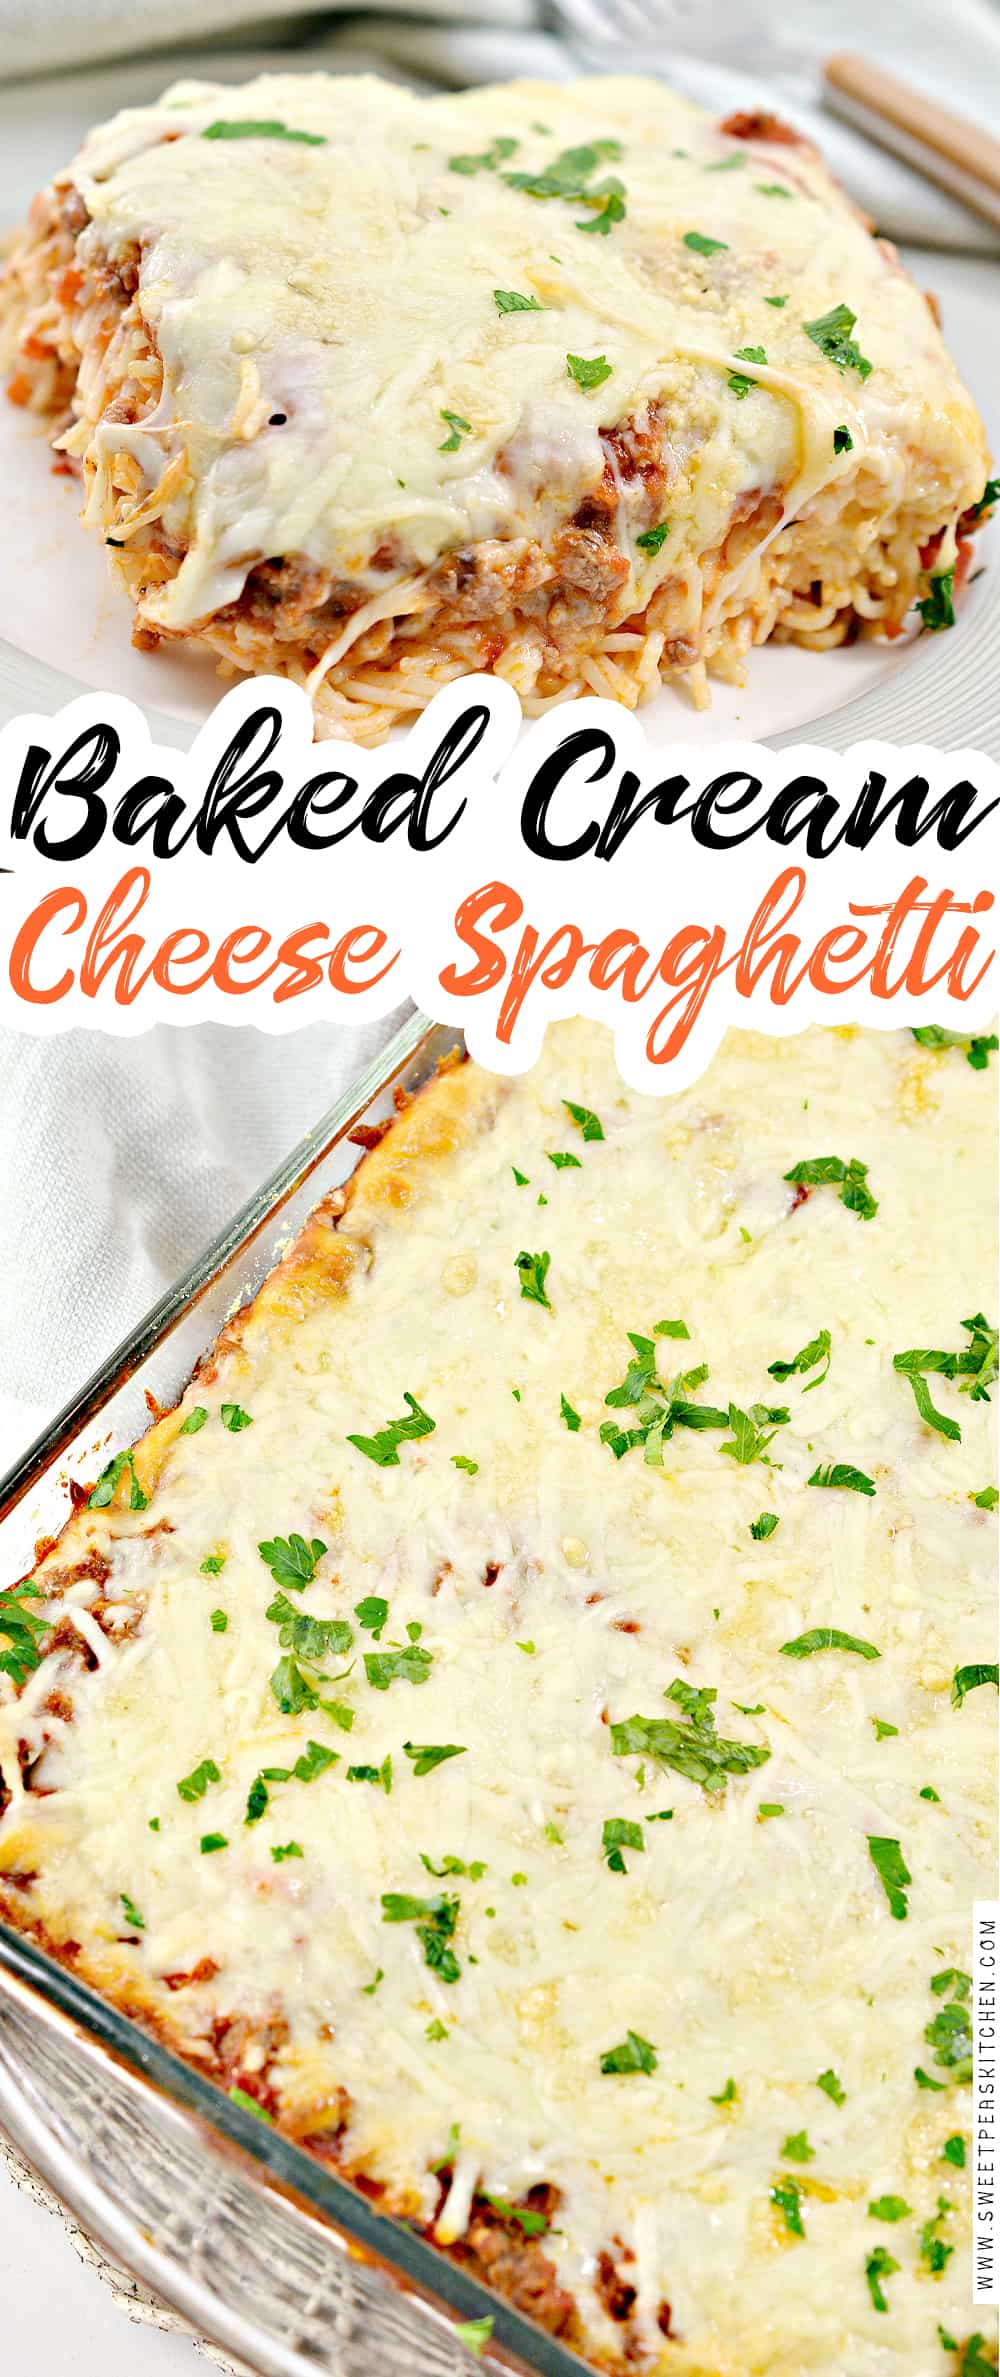 Baked Cream Cheese Spaghetti on Pinterest